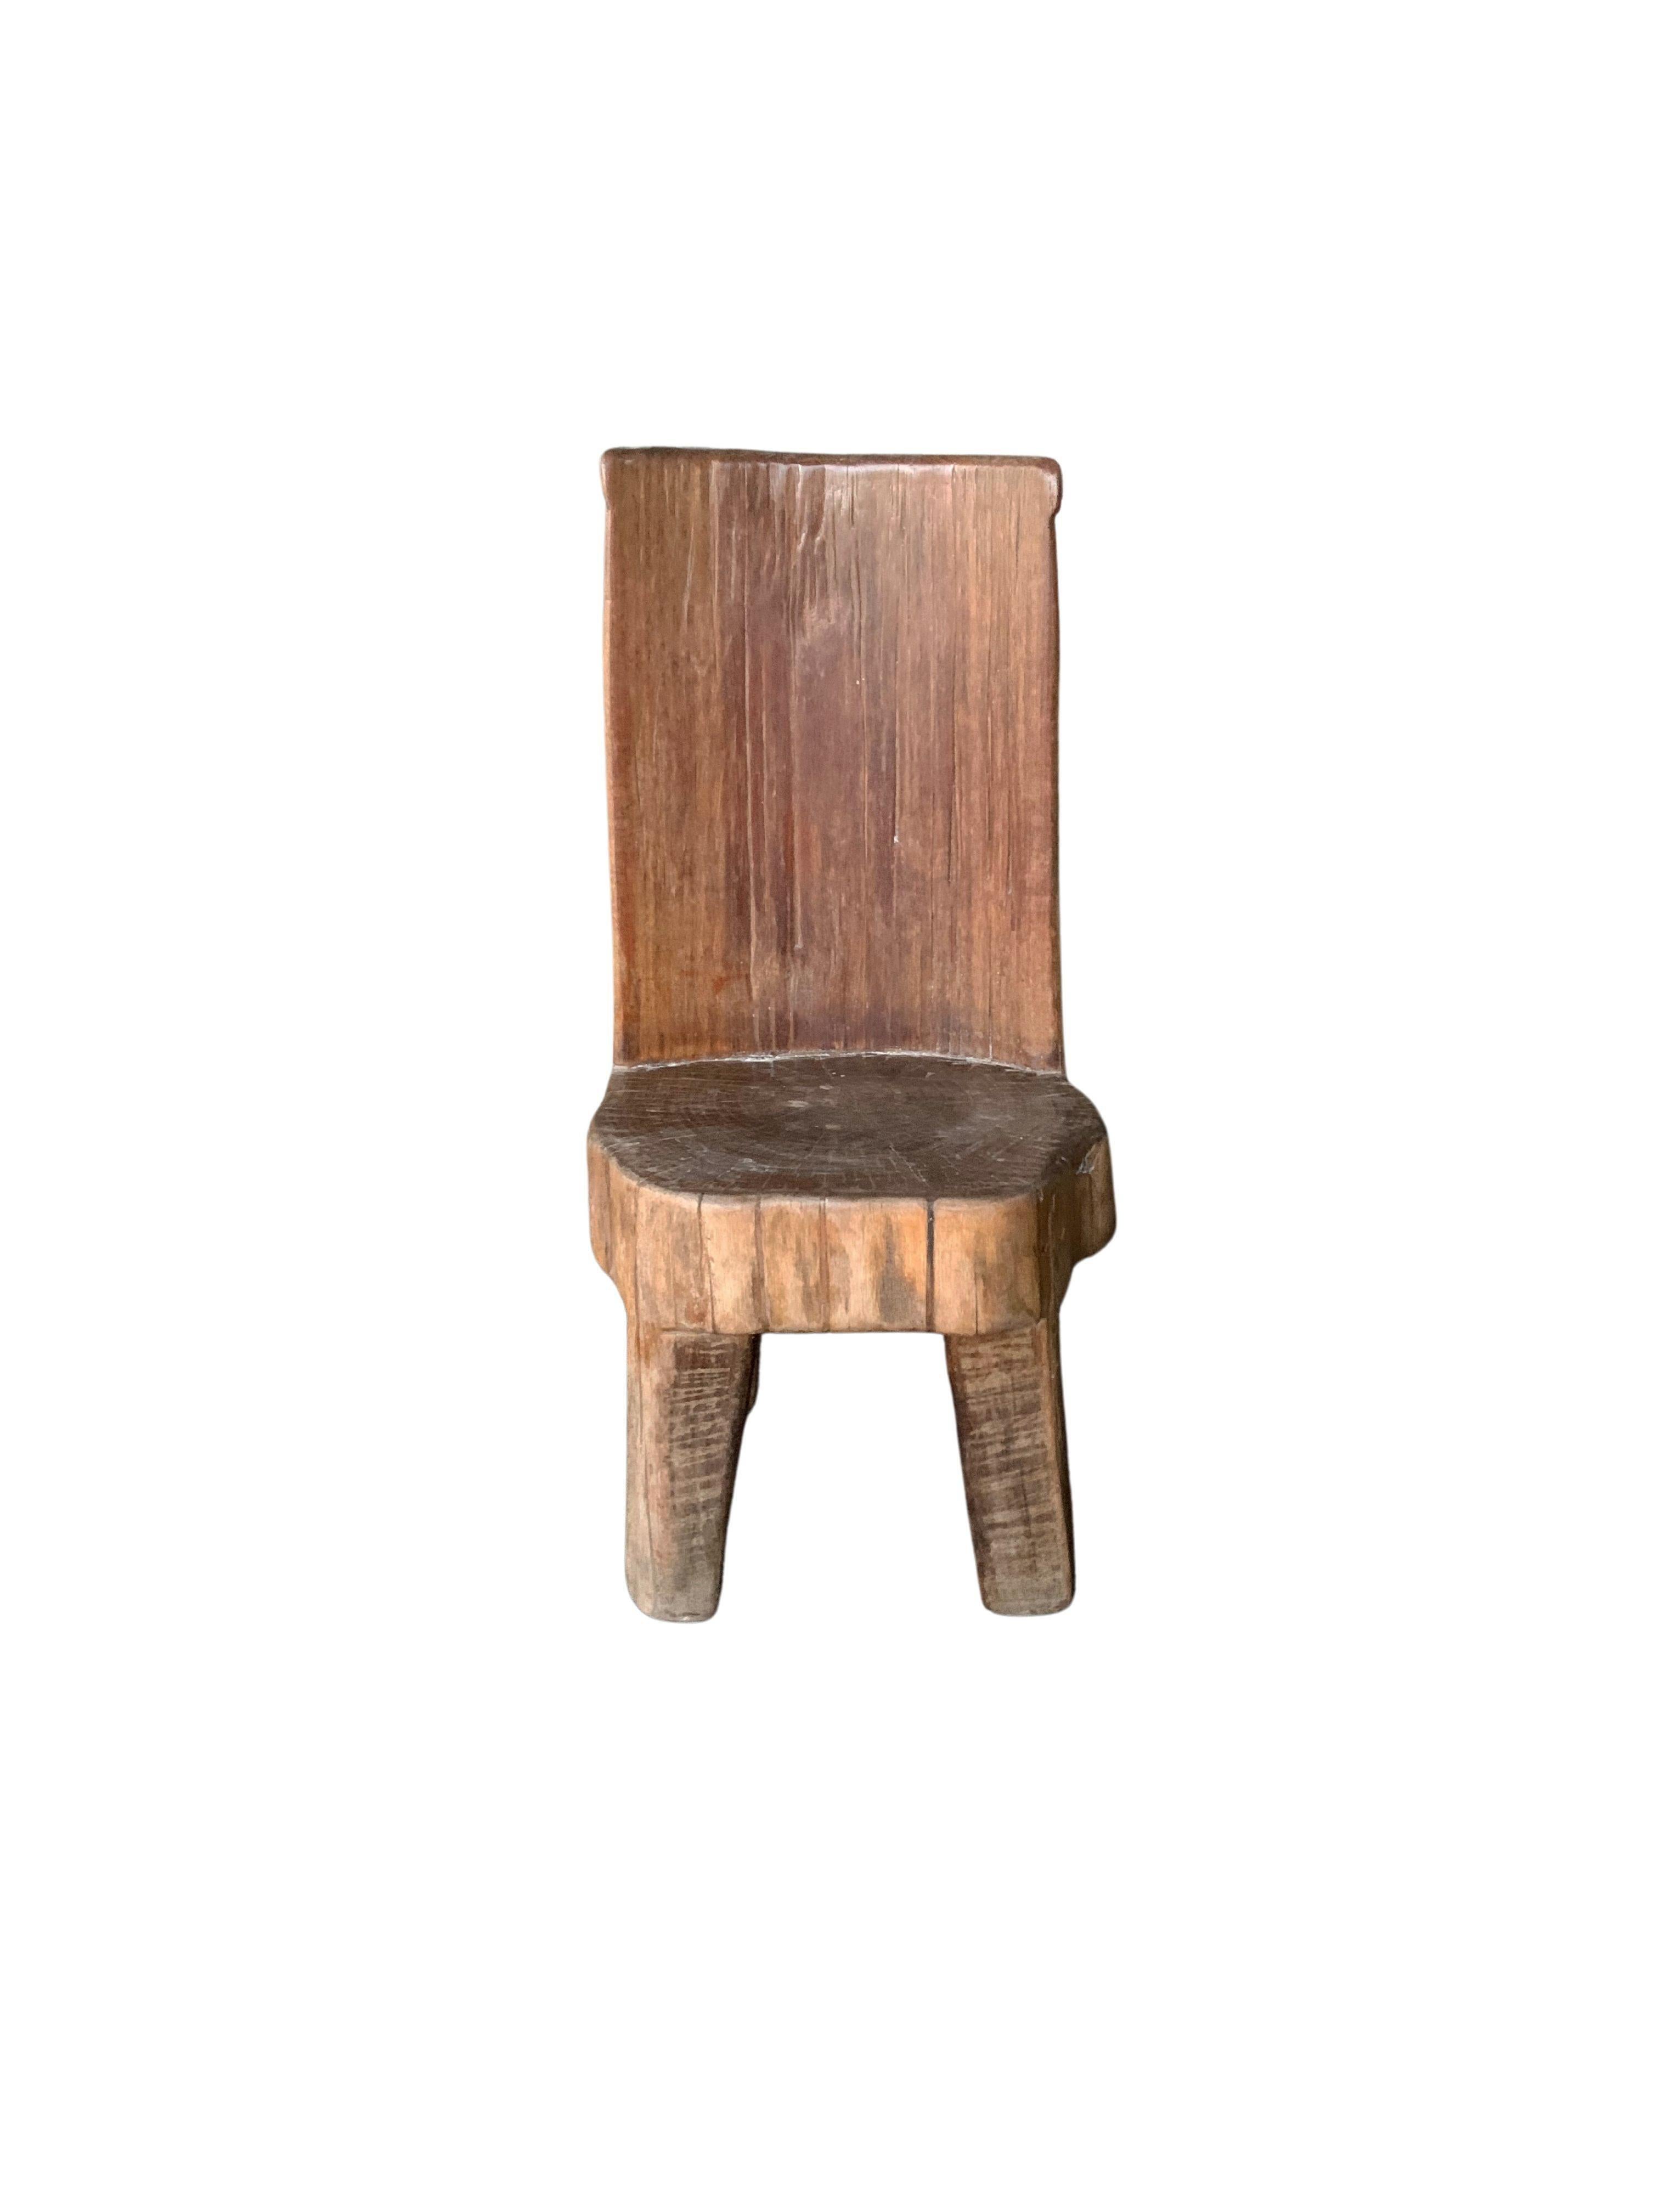 Ce mini tabouret de la fin du XXe siècle présente une belle texture de bois, fabriquée à partir d'un bloc de teck massif. Ces tabourets étaient utilisés sur l'île de Madura par les travailleurs des plantations de tabac pour couper et tailler le